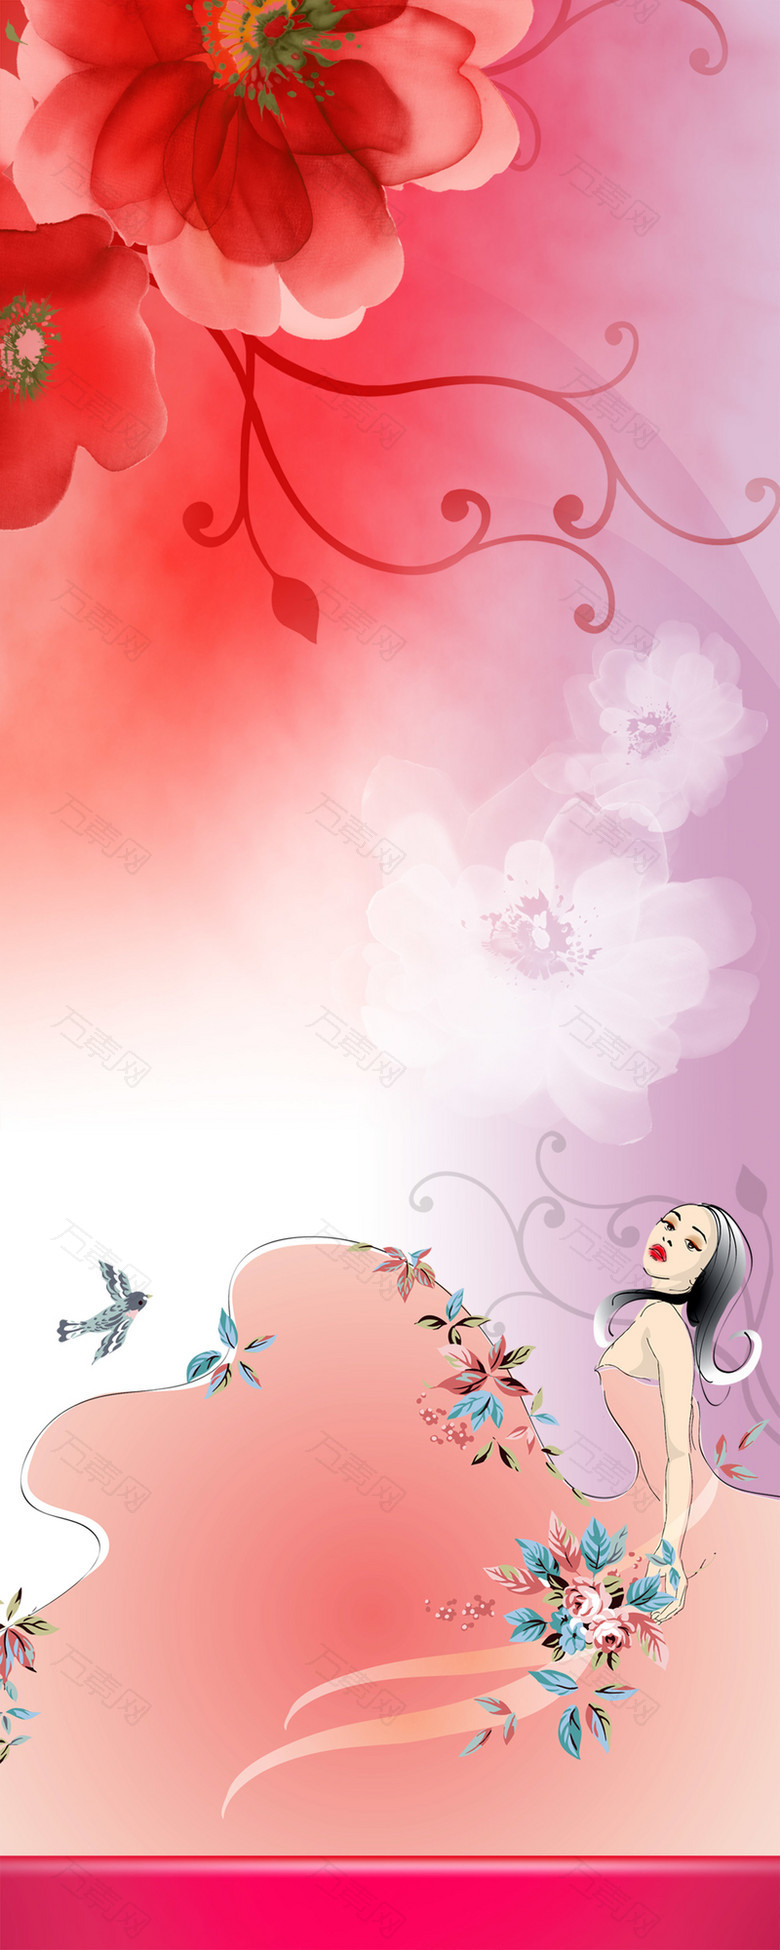 粉红色背景鲜花化妆品海报易拉宝背景素材